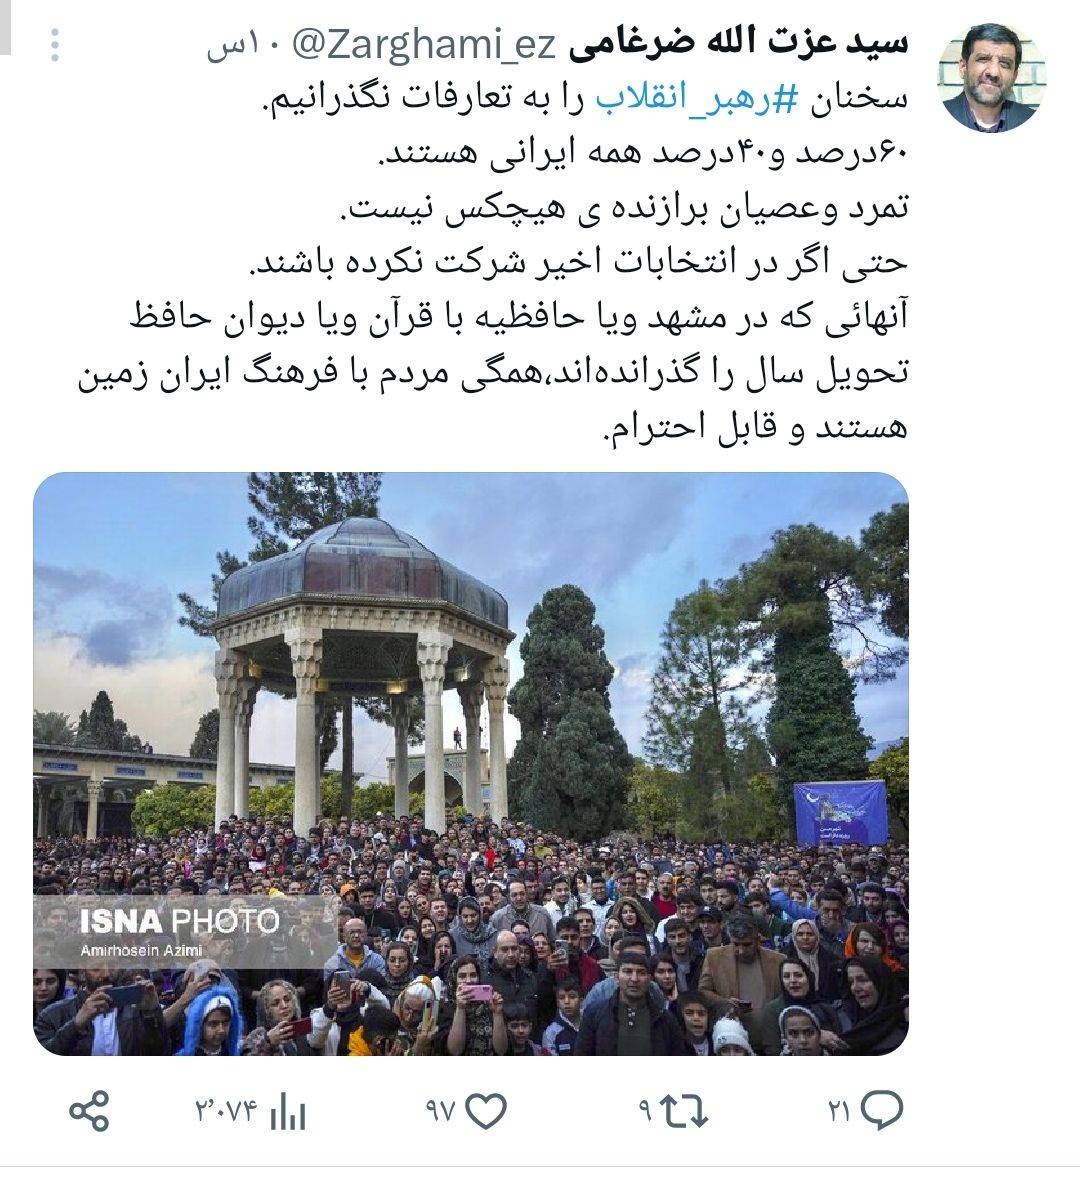 تمرد و عصیان برازنده هیچکس نیست/ کسانی که در مشهد و یا حافظیه سال را تحویل کردند مردم با فرهنگ ایران هستند